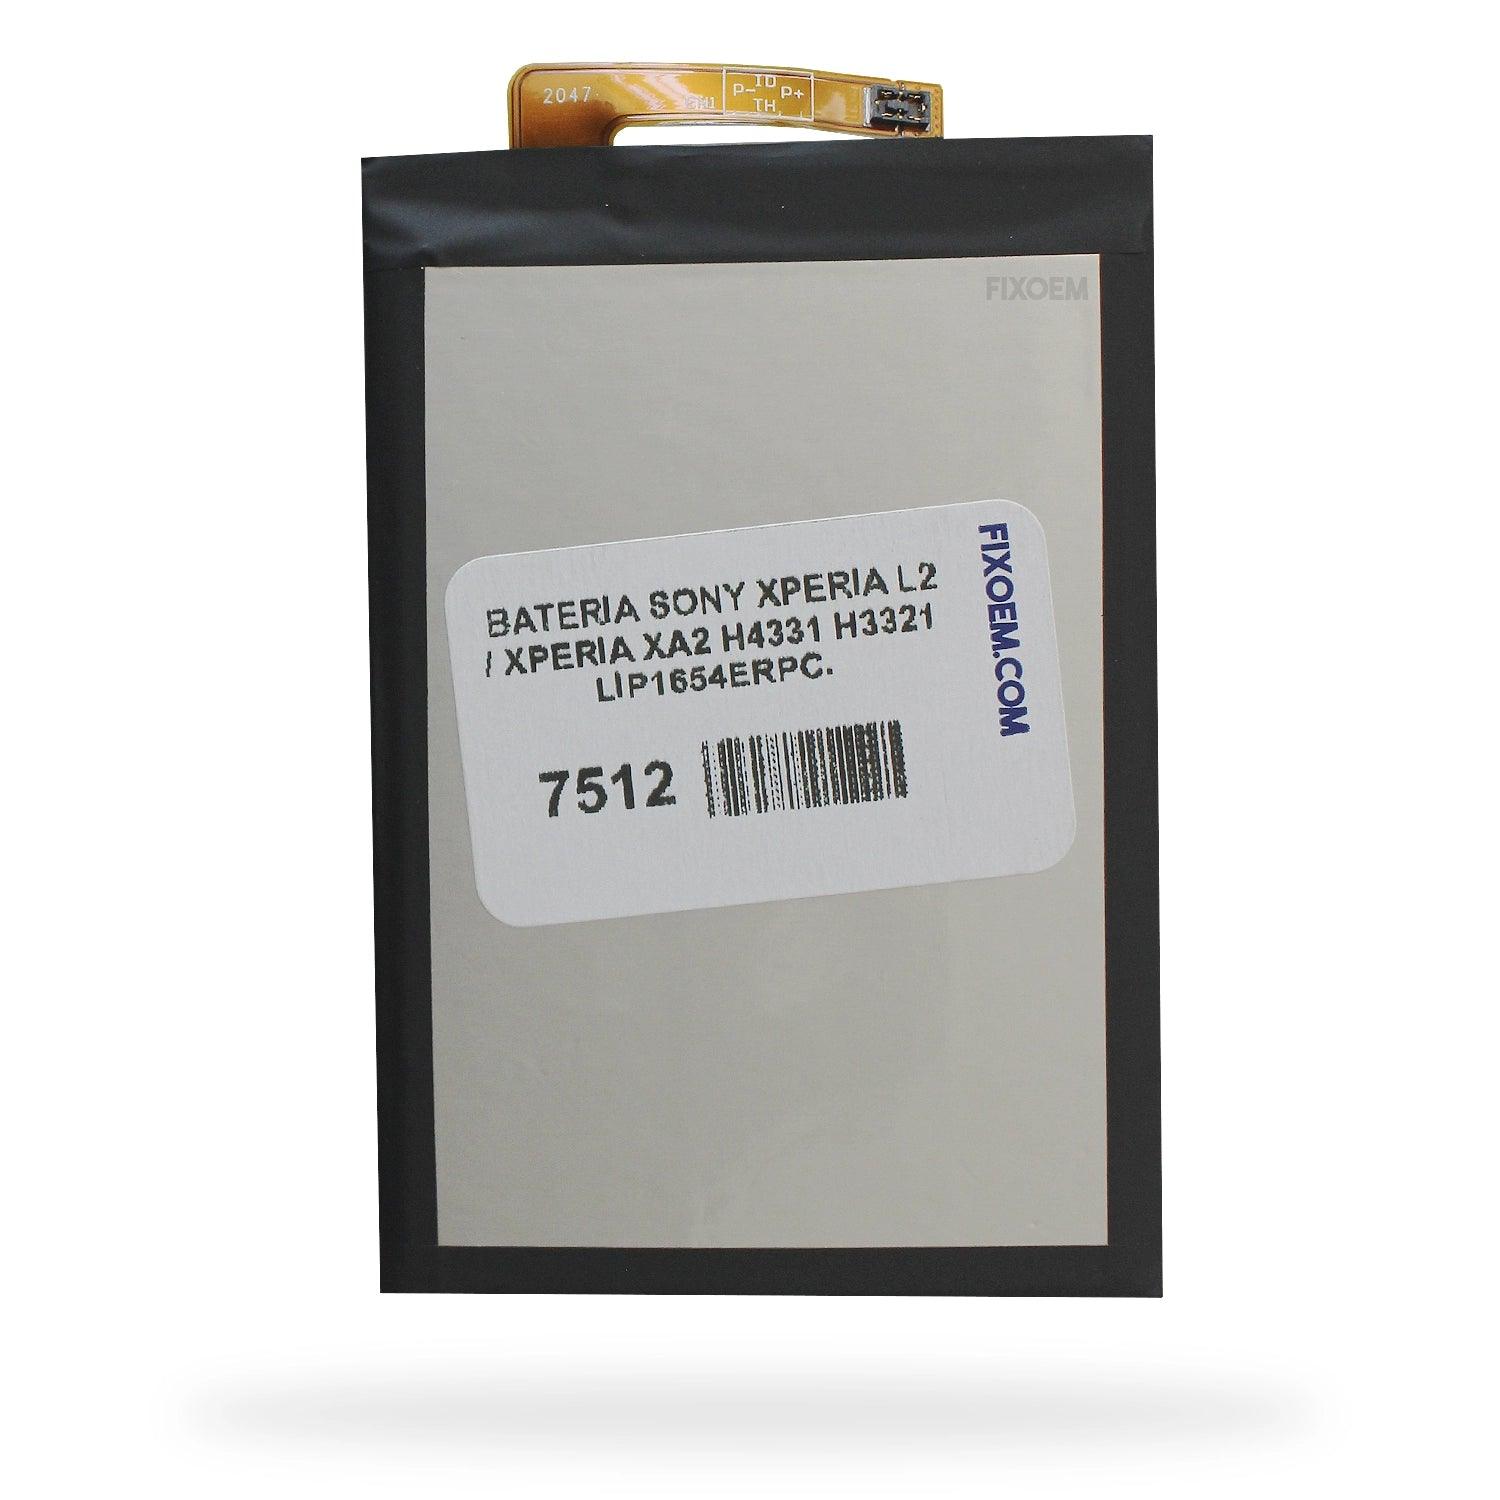 Bateria Sony Xperia L2 / Xperia Xa2 H4331 H3321 Lip1654Erpc. a solo $ 130.00 Refaccion y puestos celulares, refurbish y microelectronica.- FixOEM